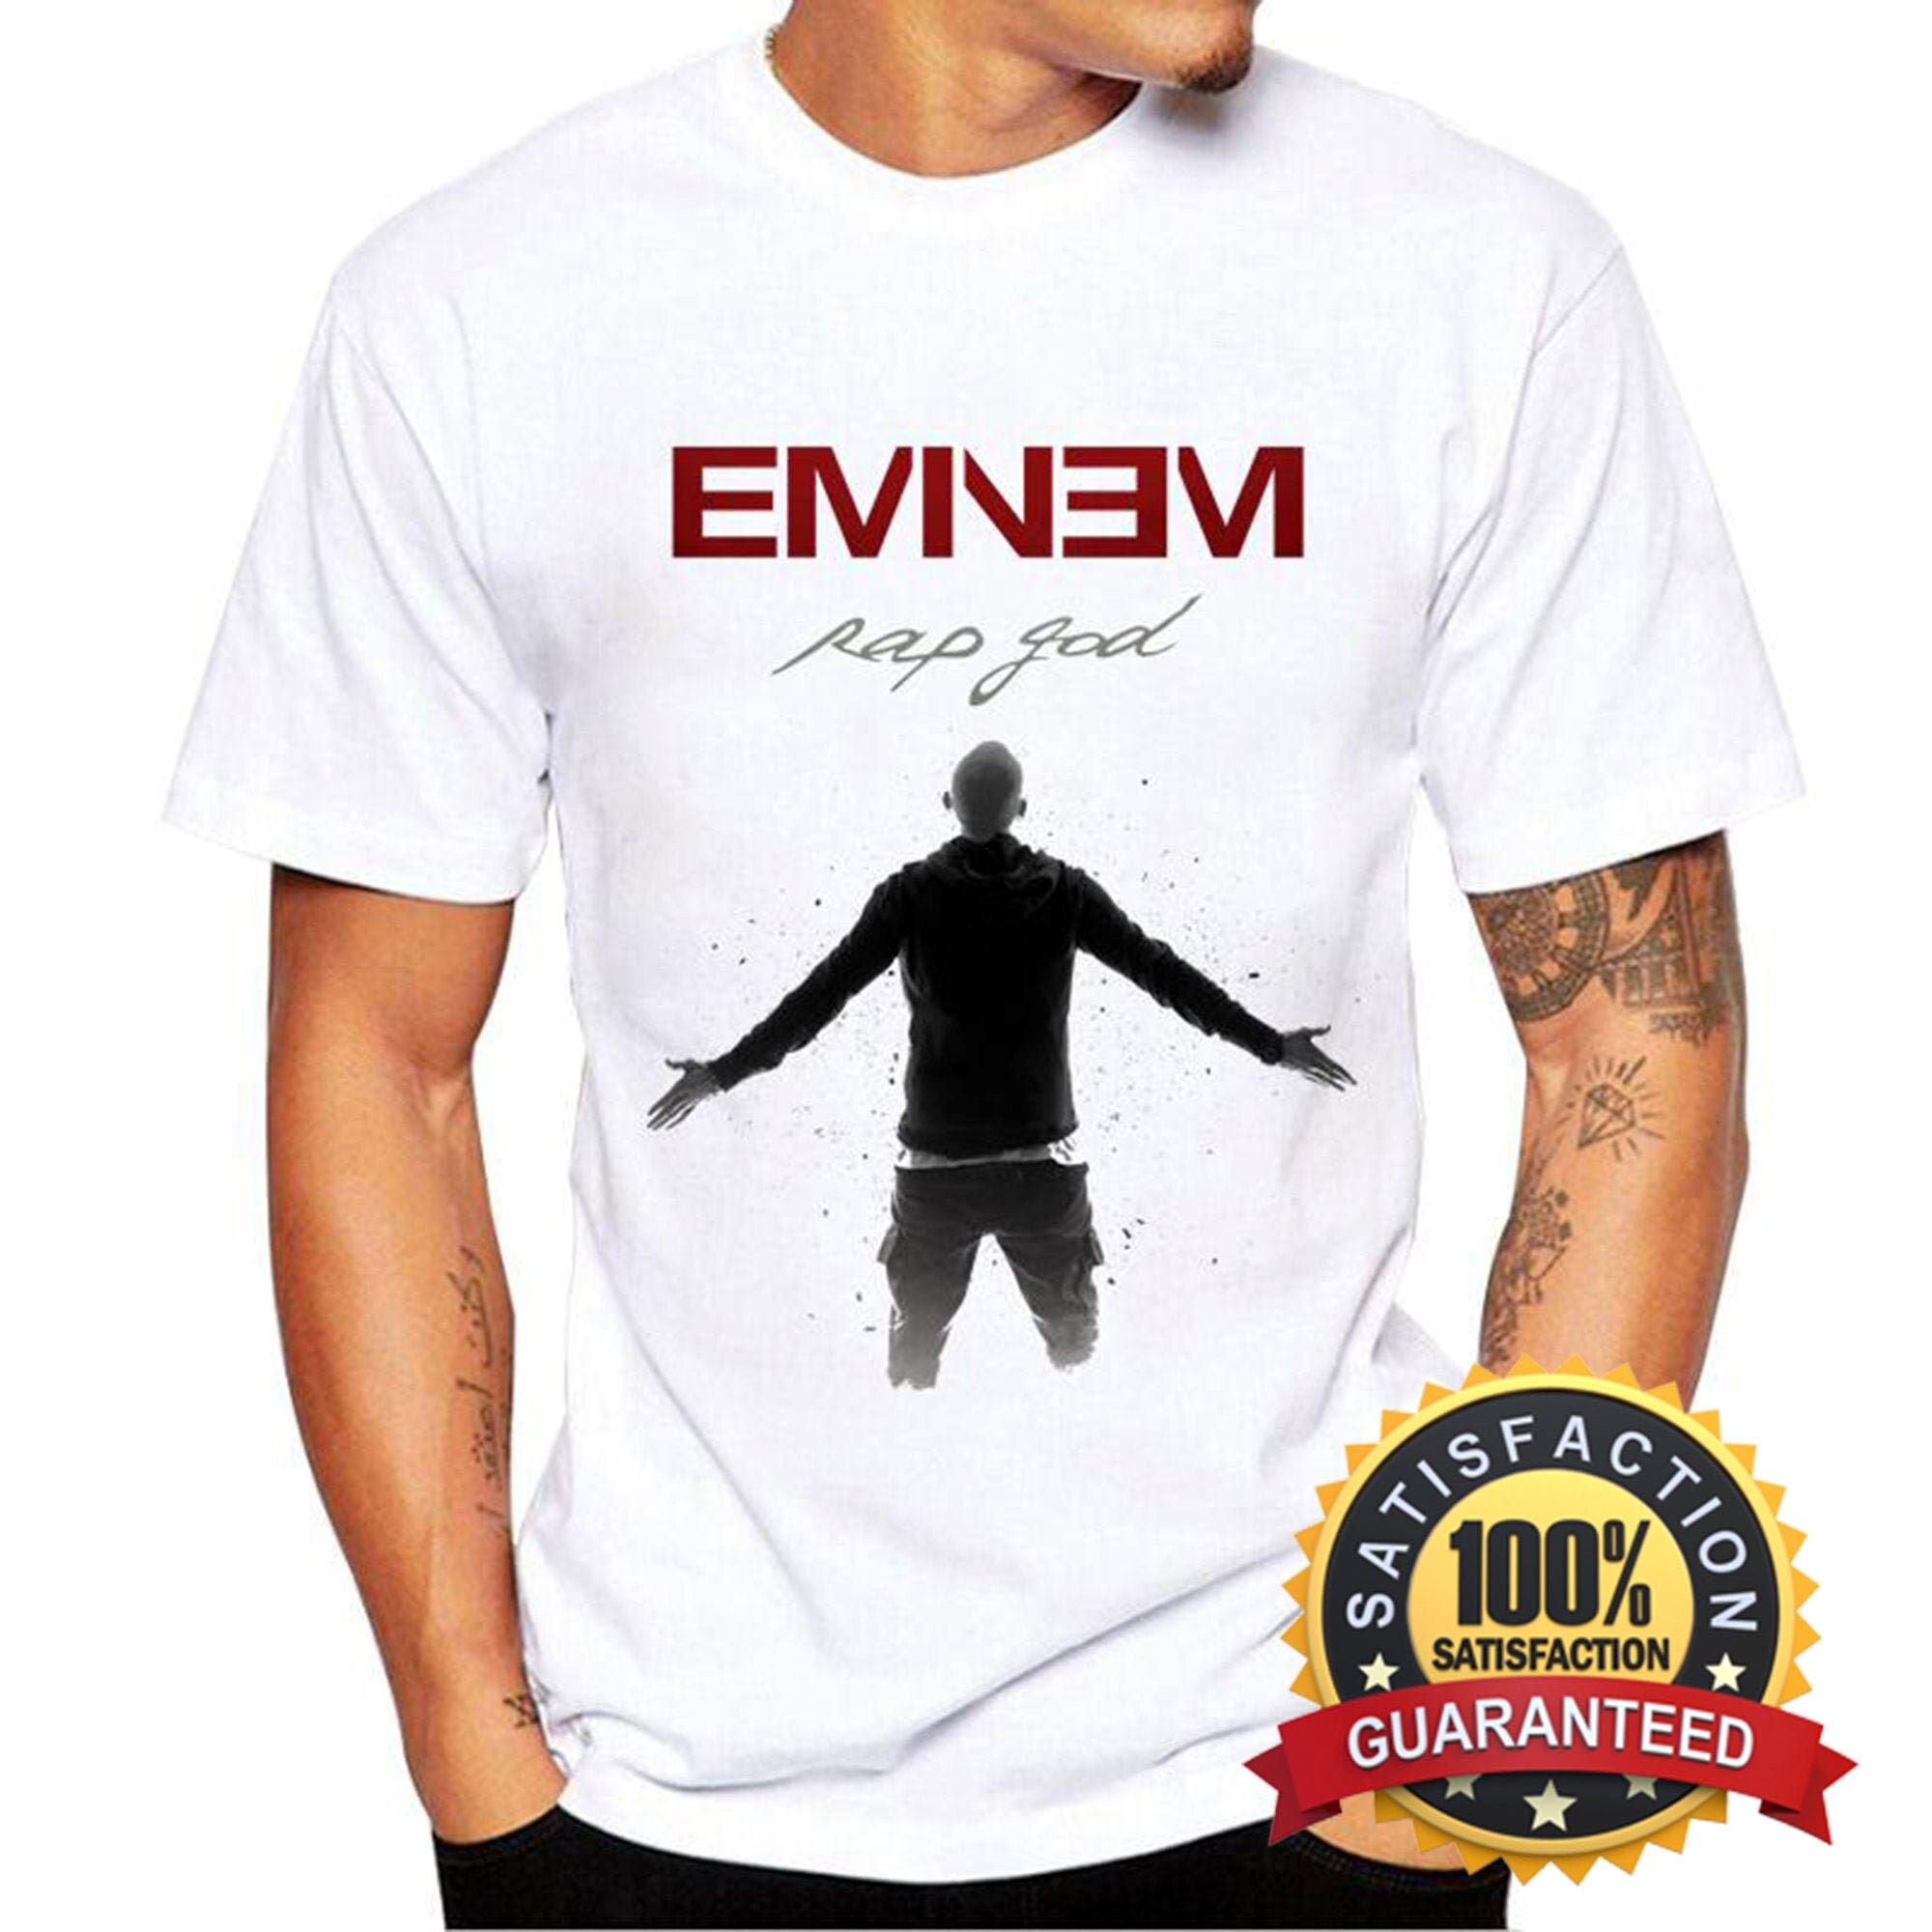 Eminem Shirt Eminem Clothes Eminem Tee Eminem Merch Eminem Gift Shirt Eminem Short Sleeves Ab590